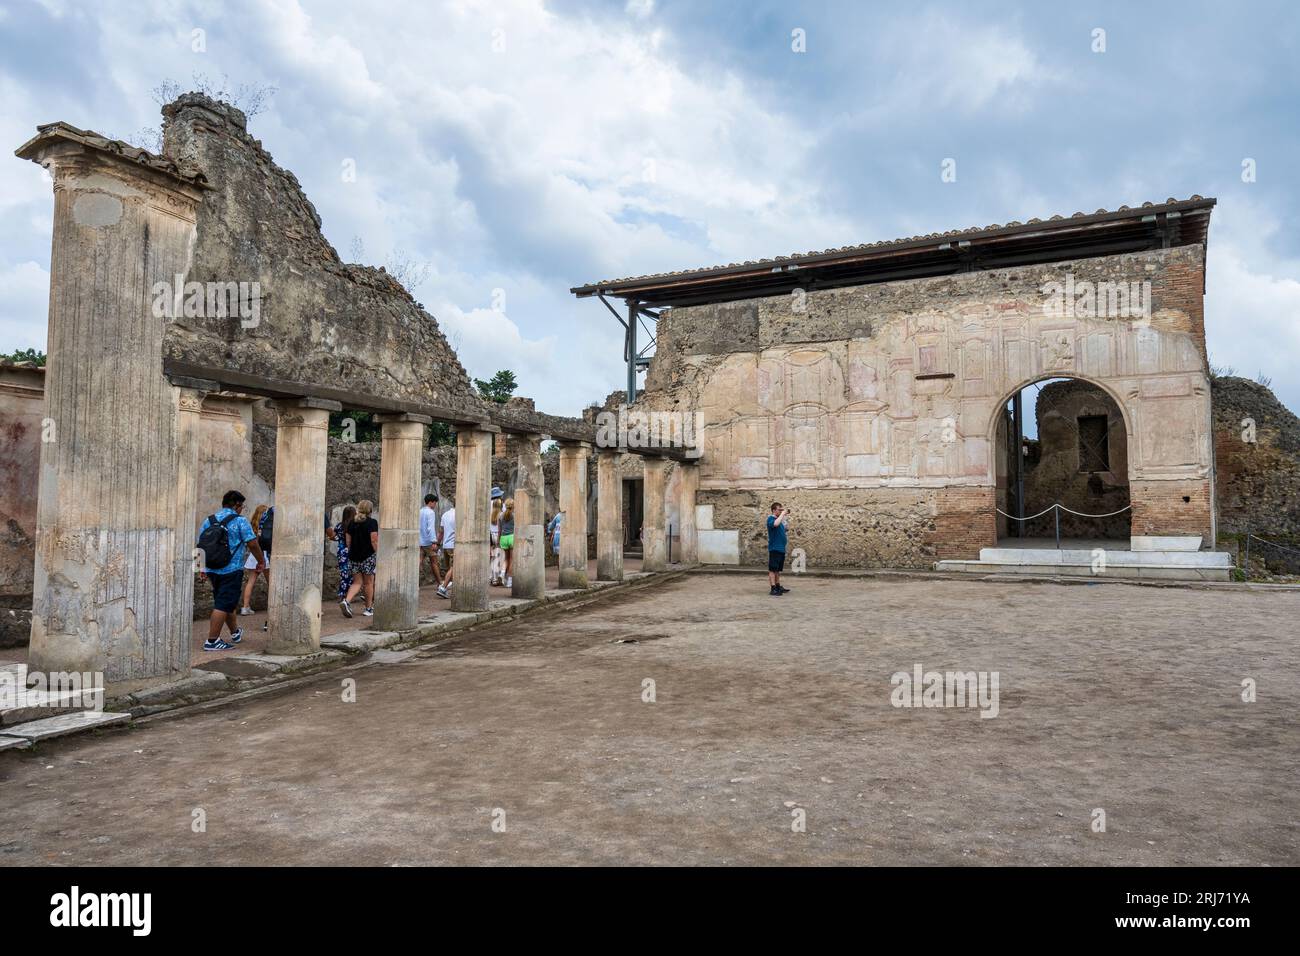 Bassorilievo delle Terme Stabiane nelle rovine dell'antica città di Pompei nella regione Campania Foto Stock